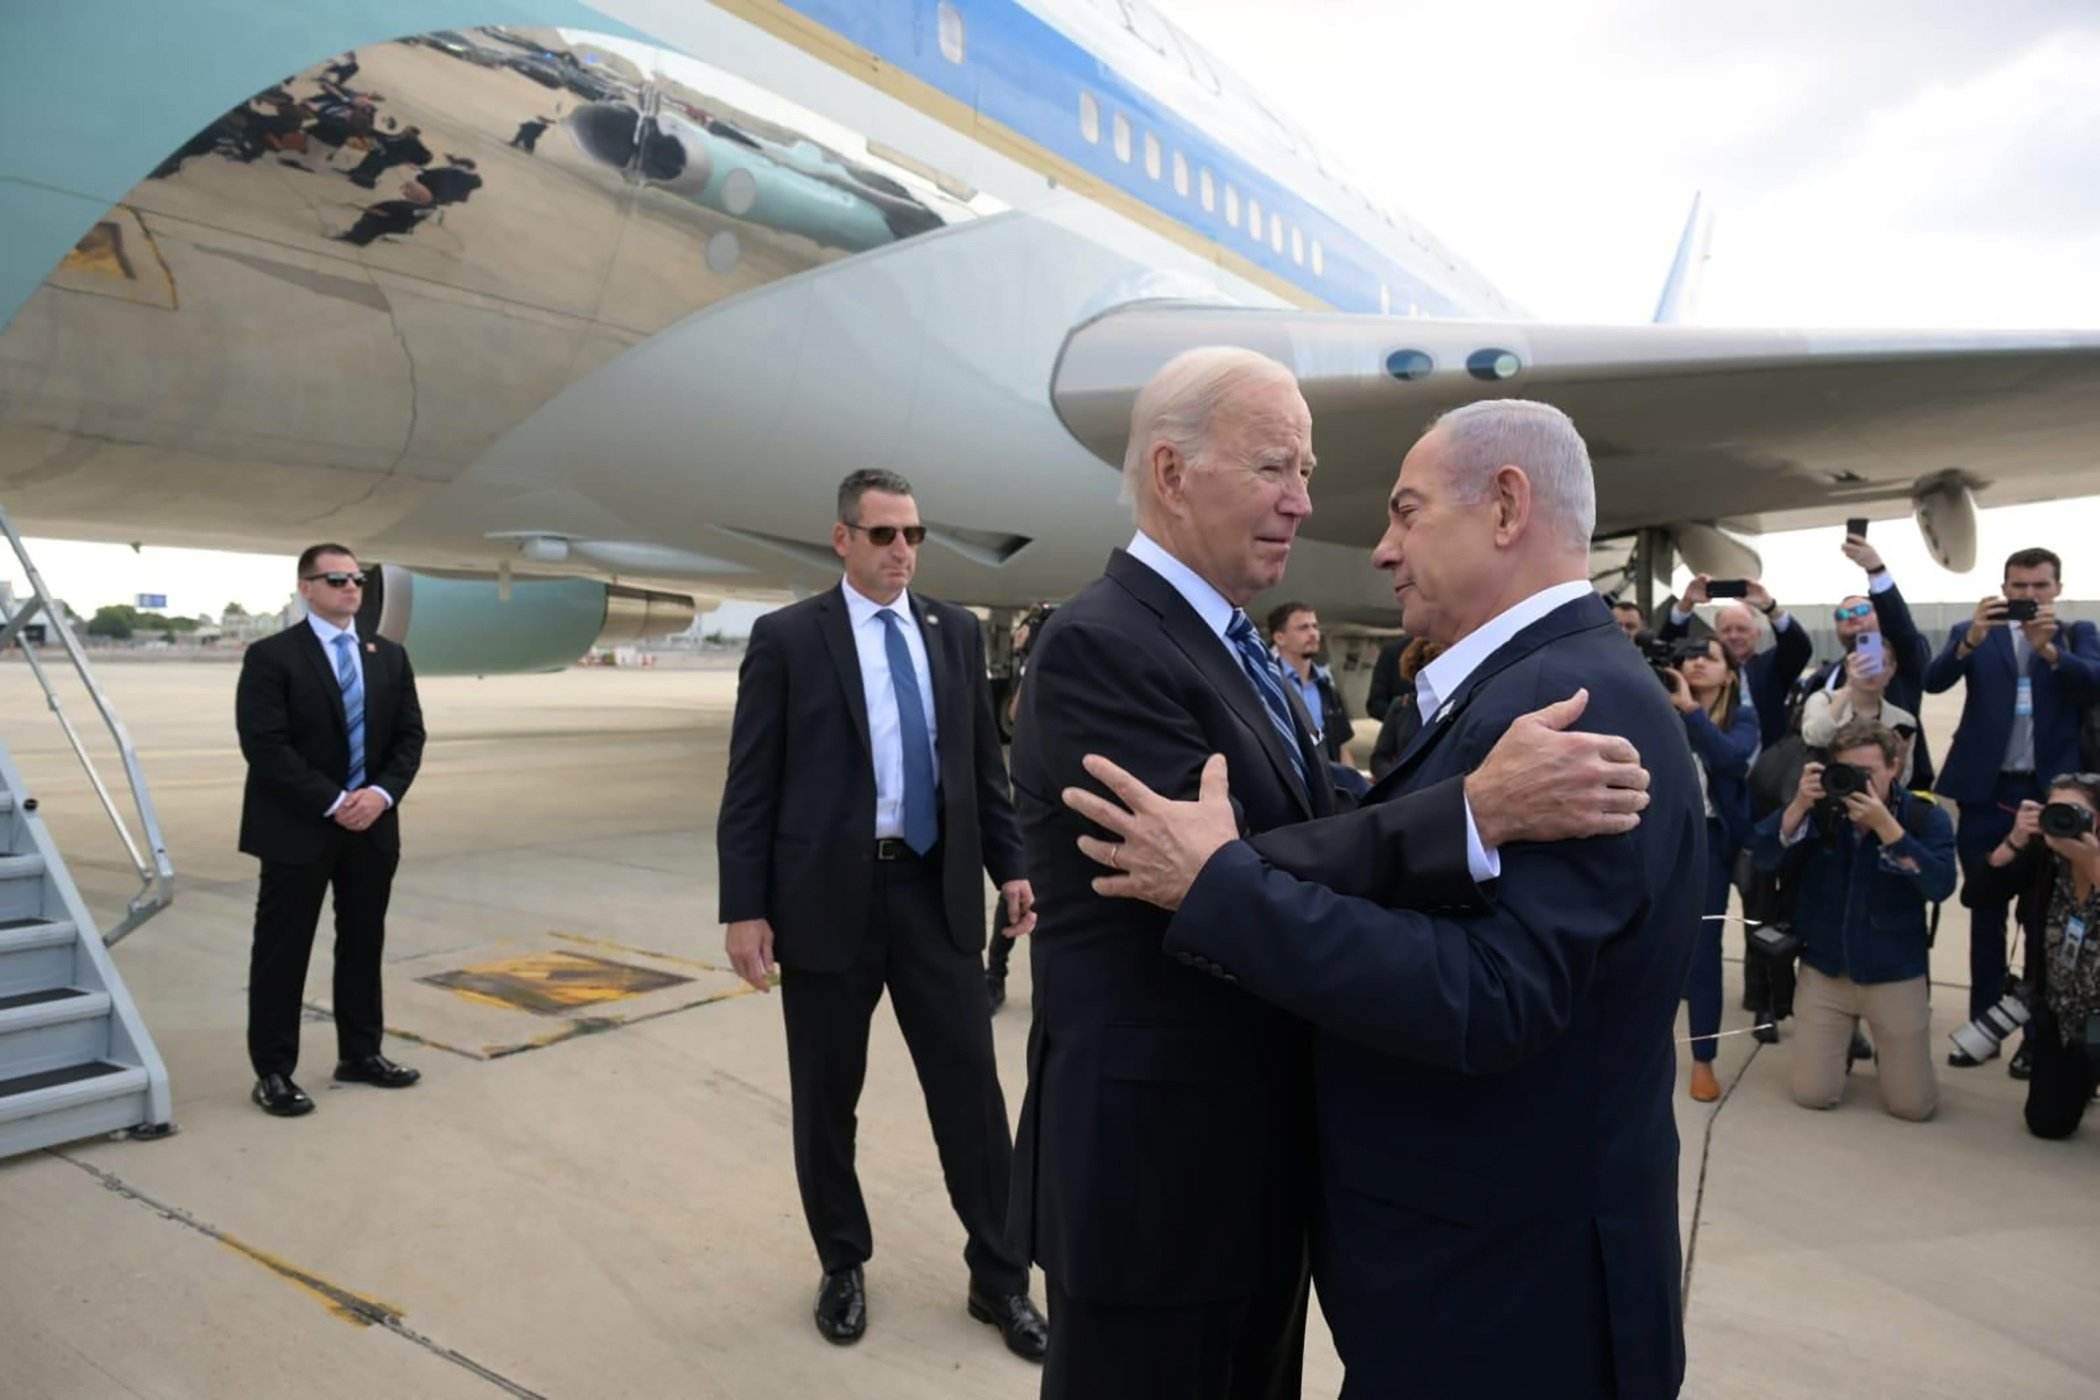 Biden, des d'Israel: "Soc aquí perquè tothom sàpiga quina és la posició dels EUA"